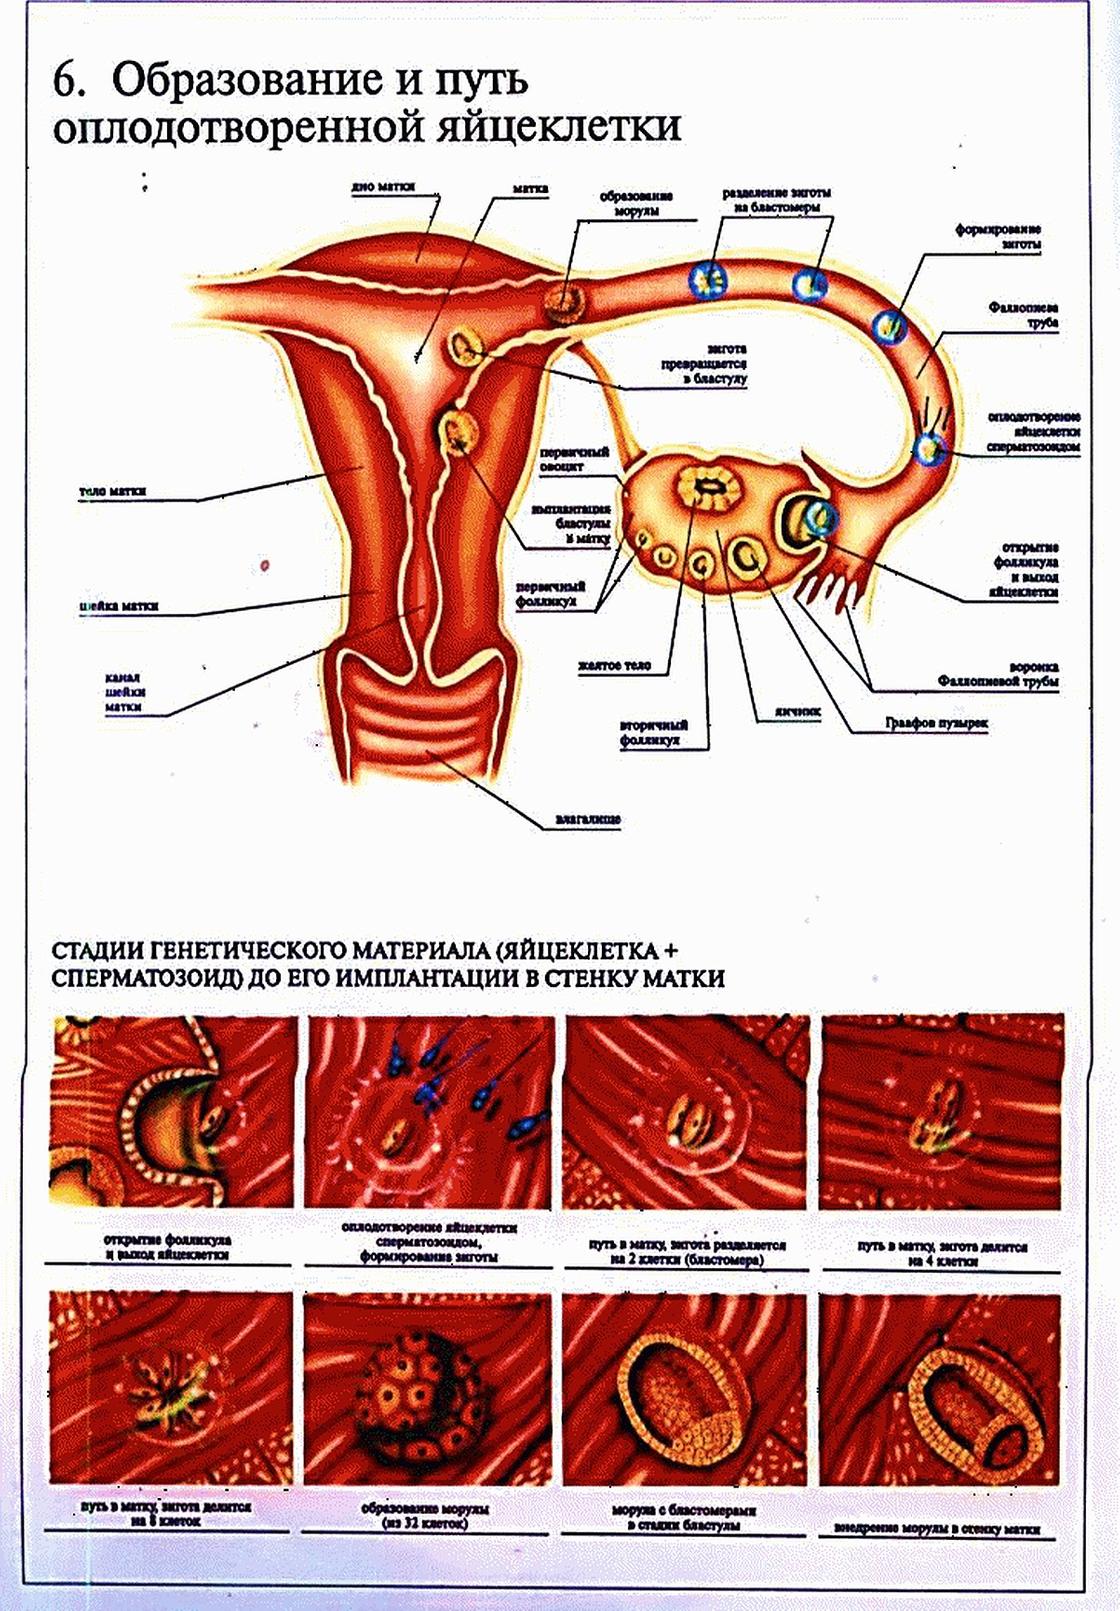 Оплодотворение в полости матки. Схема путей яйцеклетки по маточной трубе. Движение яйцеклетки по дням цикла. Процесс оплодотворения яйцеклетки схема. Путь яйцеклетки после оплодотворения.